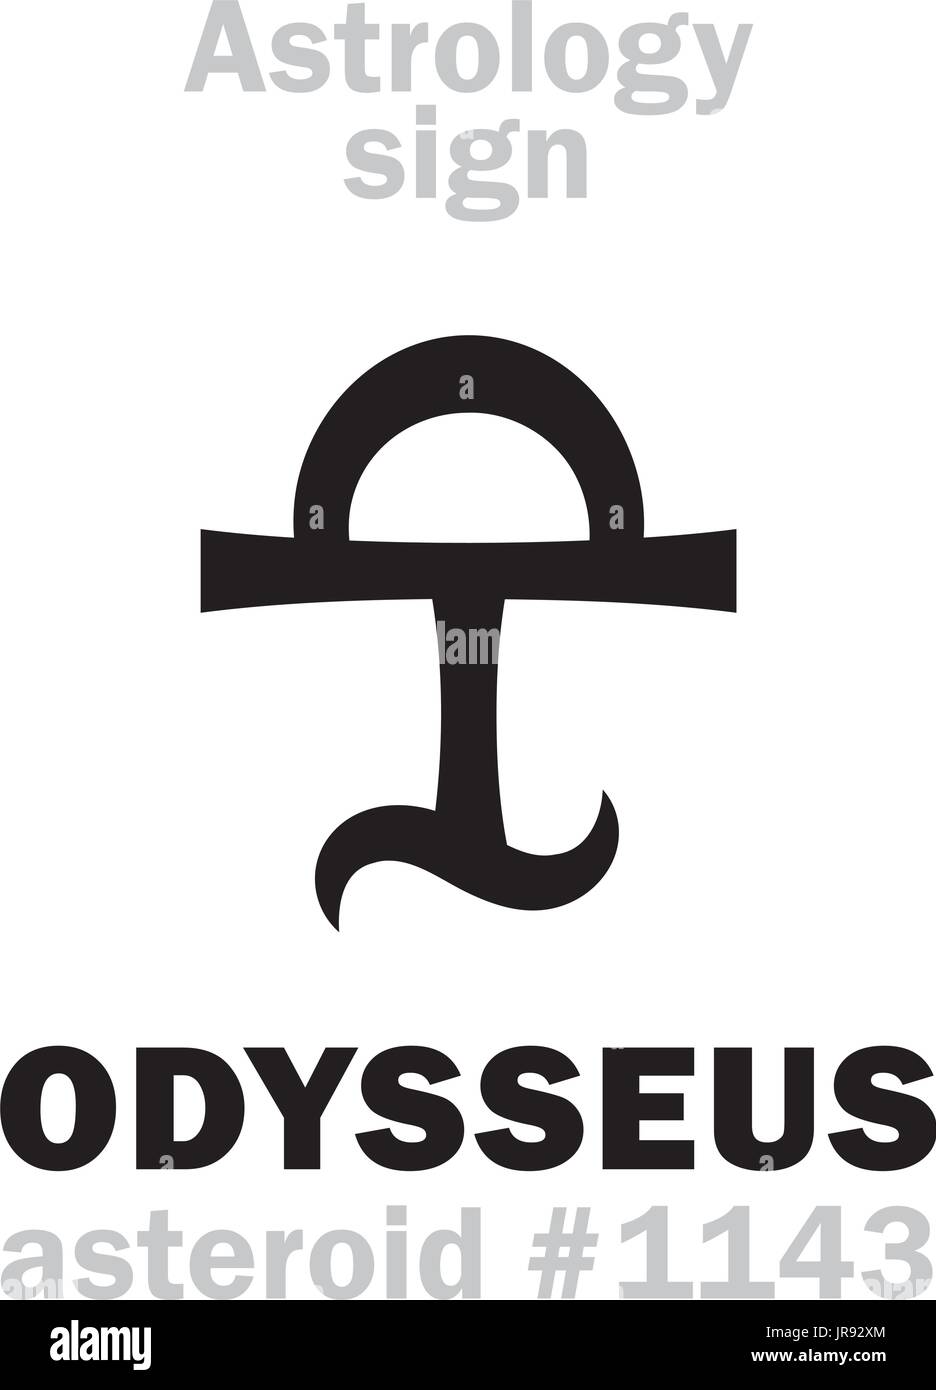 Alfabeto astrologia: ODYSSEUS (Ulyxes), asteroide #1143. Caratteri geroglifici segno (simbolo unico). Illustrazione Vettoriale